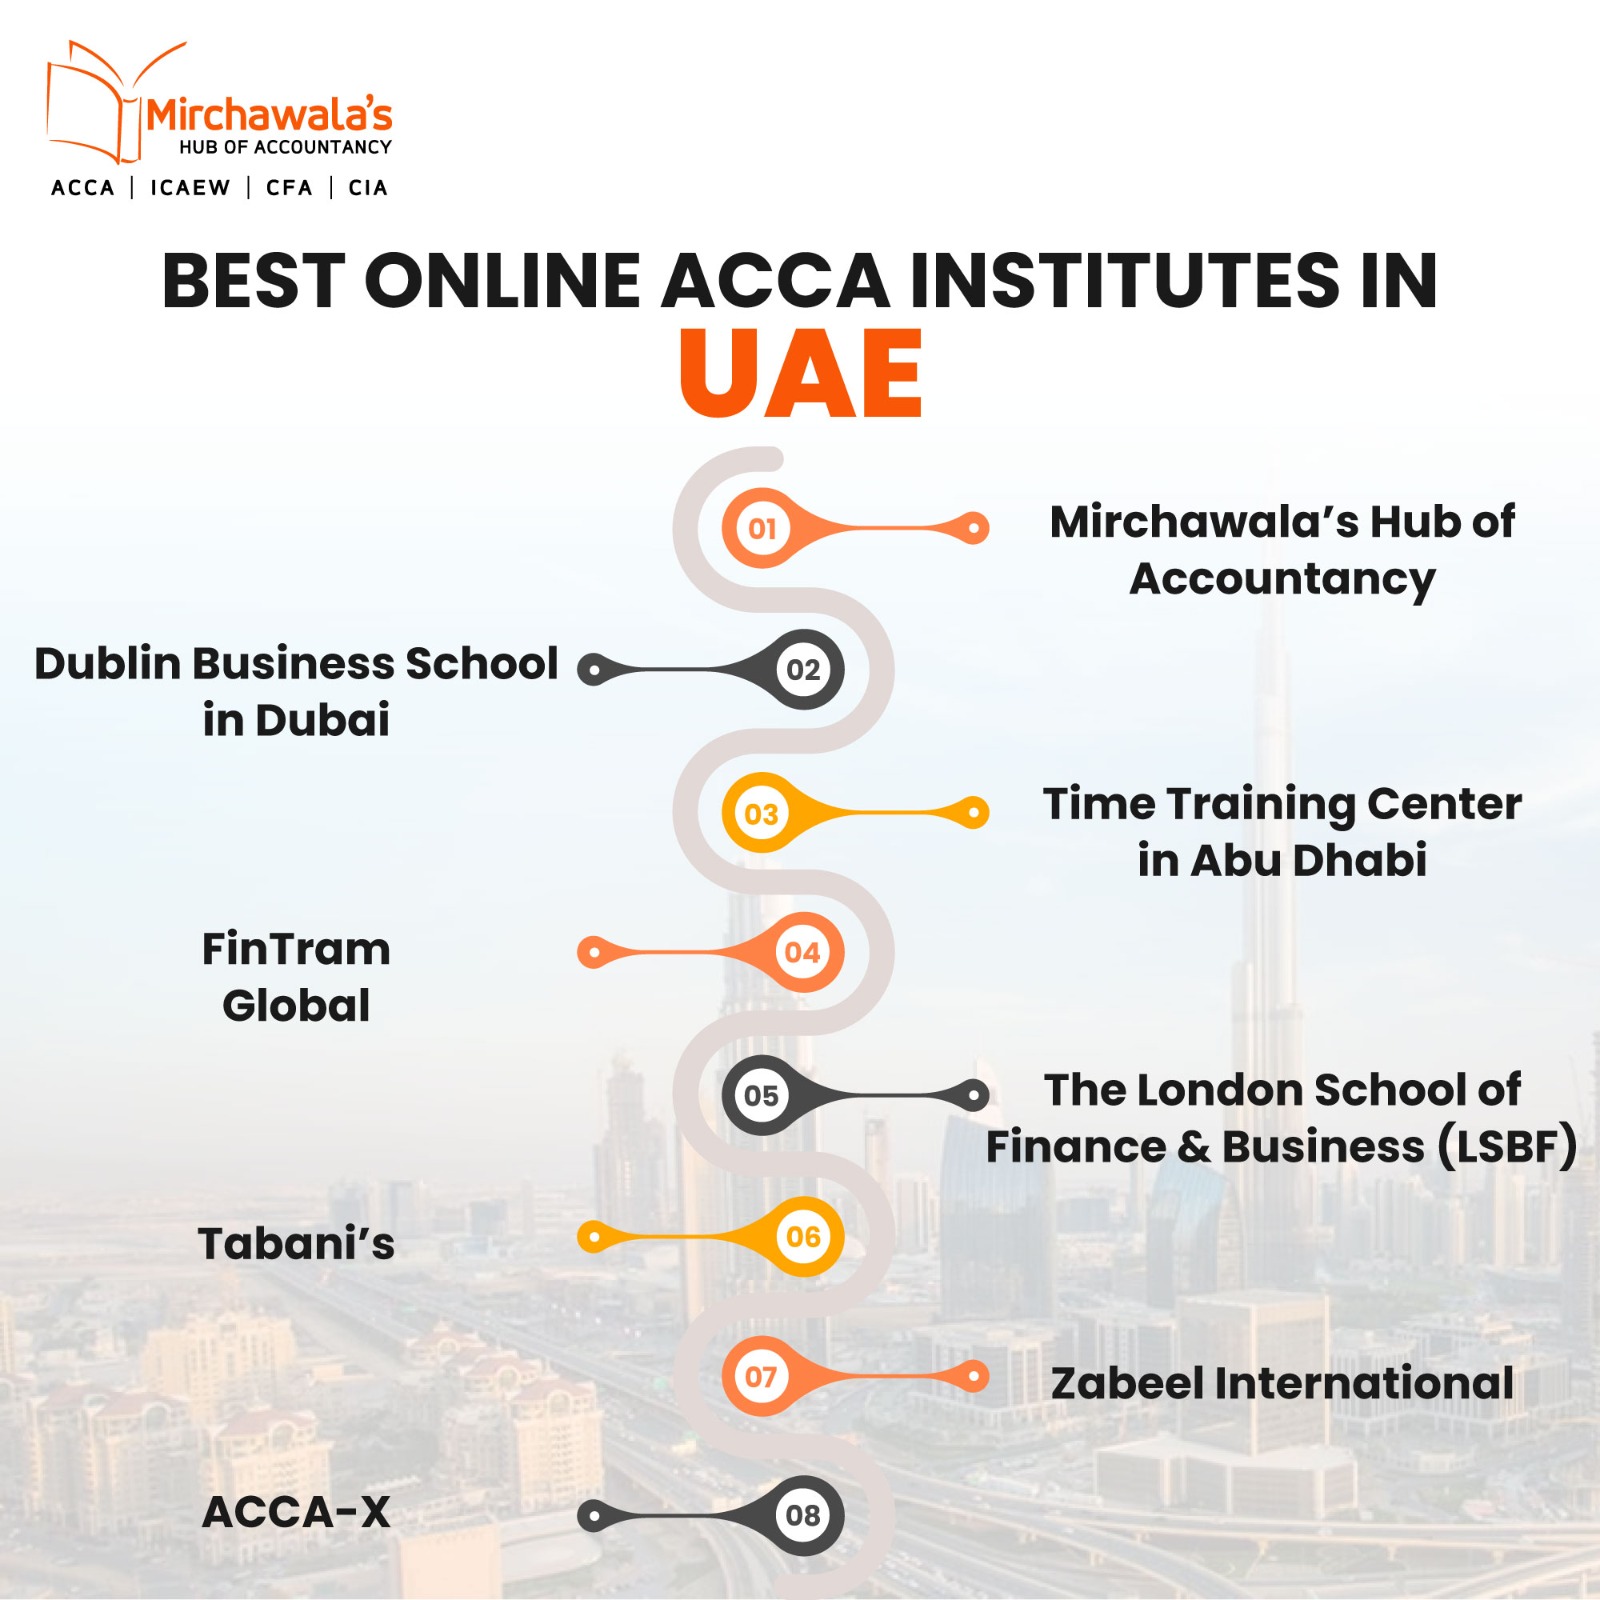 The Best Online ACCA Institutes in UAE